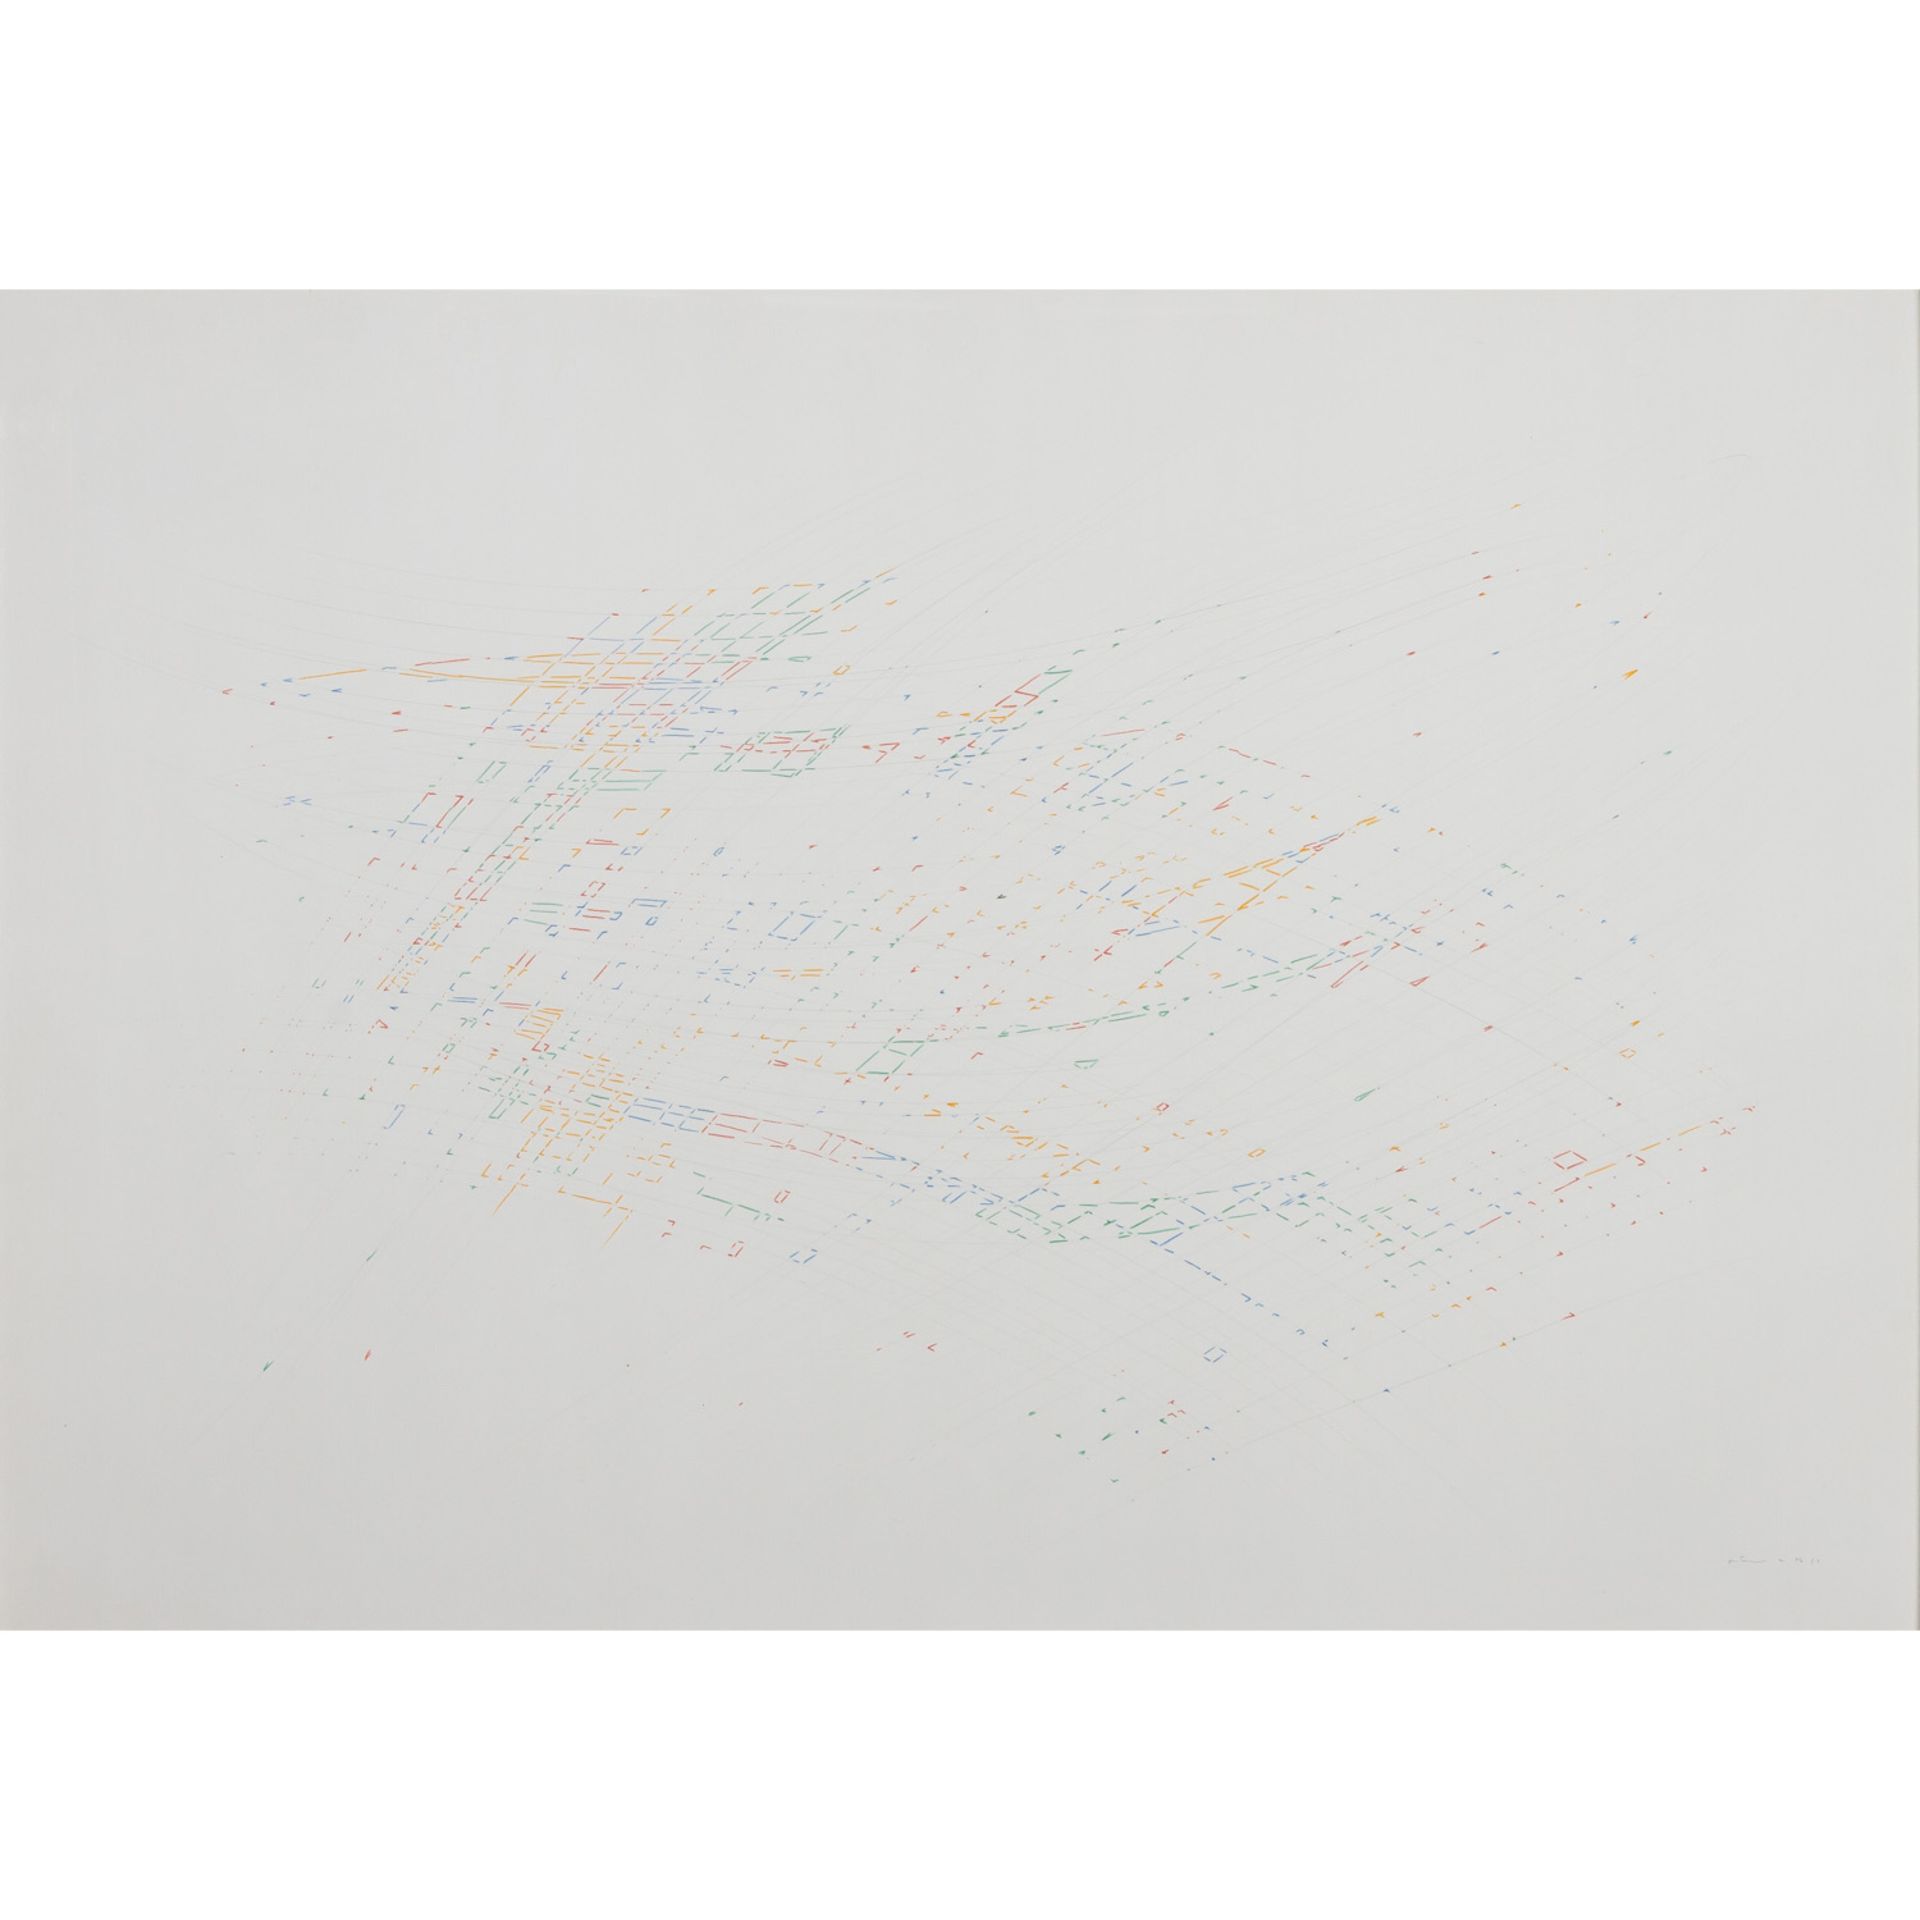 KRENN, OTTMAR (geb. 1952), kontruktivistische Komposition, 1976,